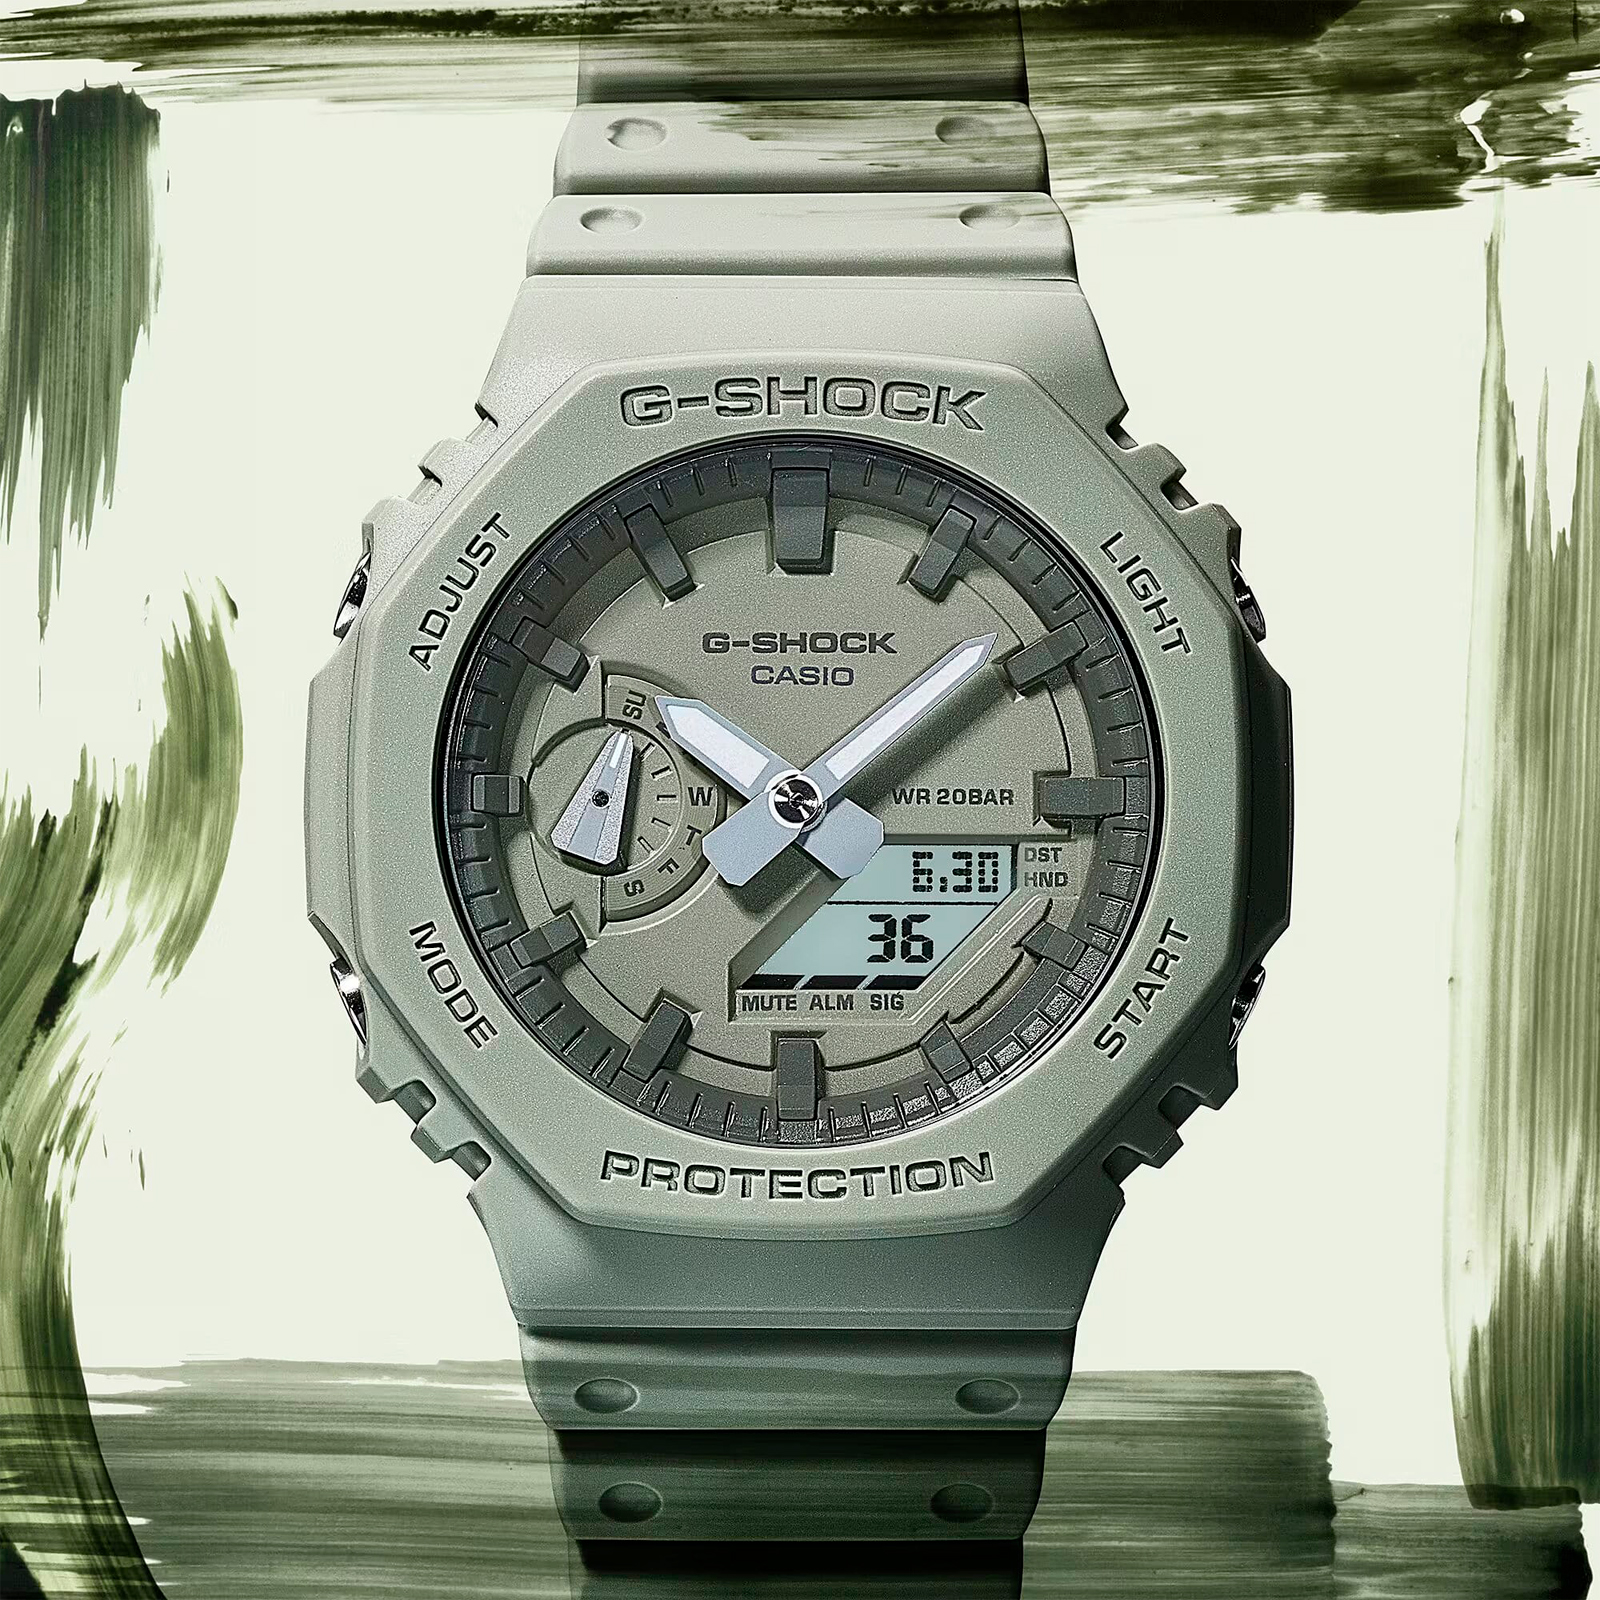 Reloj G-SHOCK GA-2140RX-7A Carbono/Resina Hombre Transparente - Btime